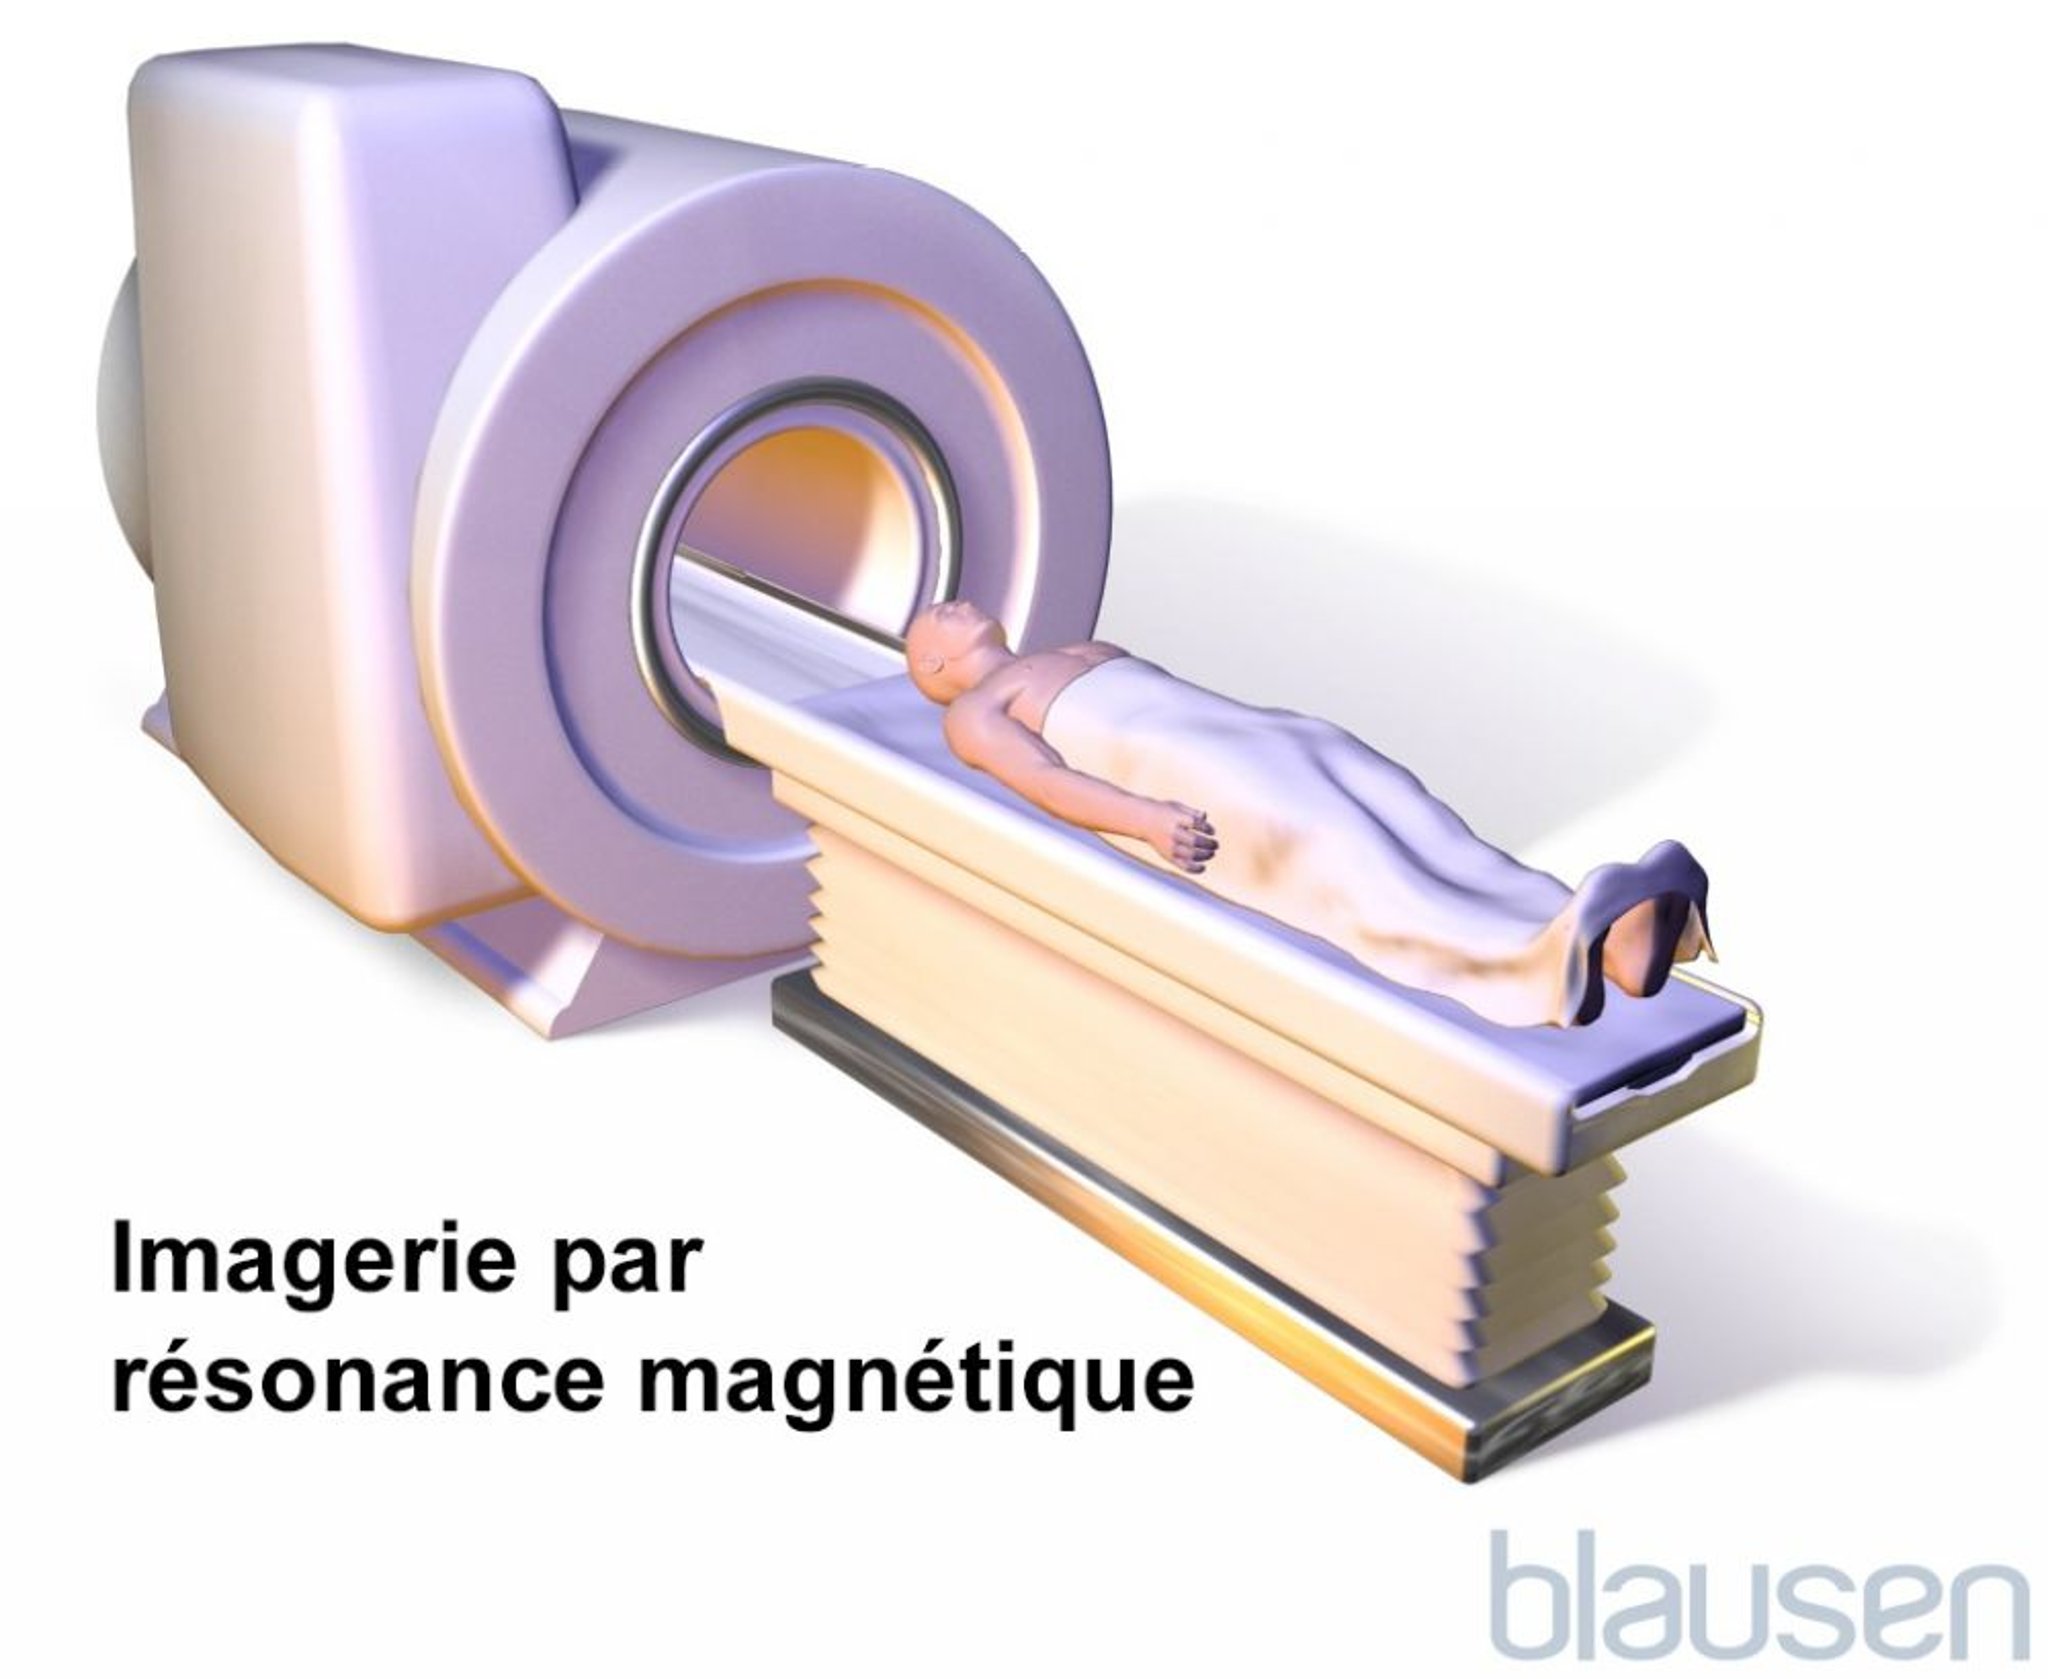 Imagerie par résonance magnétique (IRM)